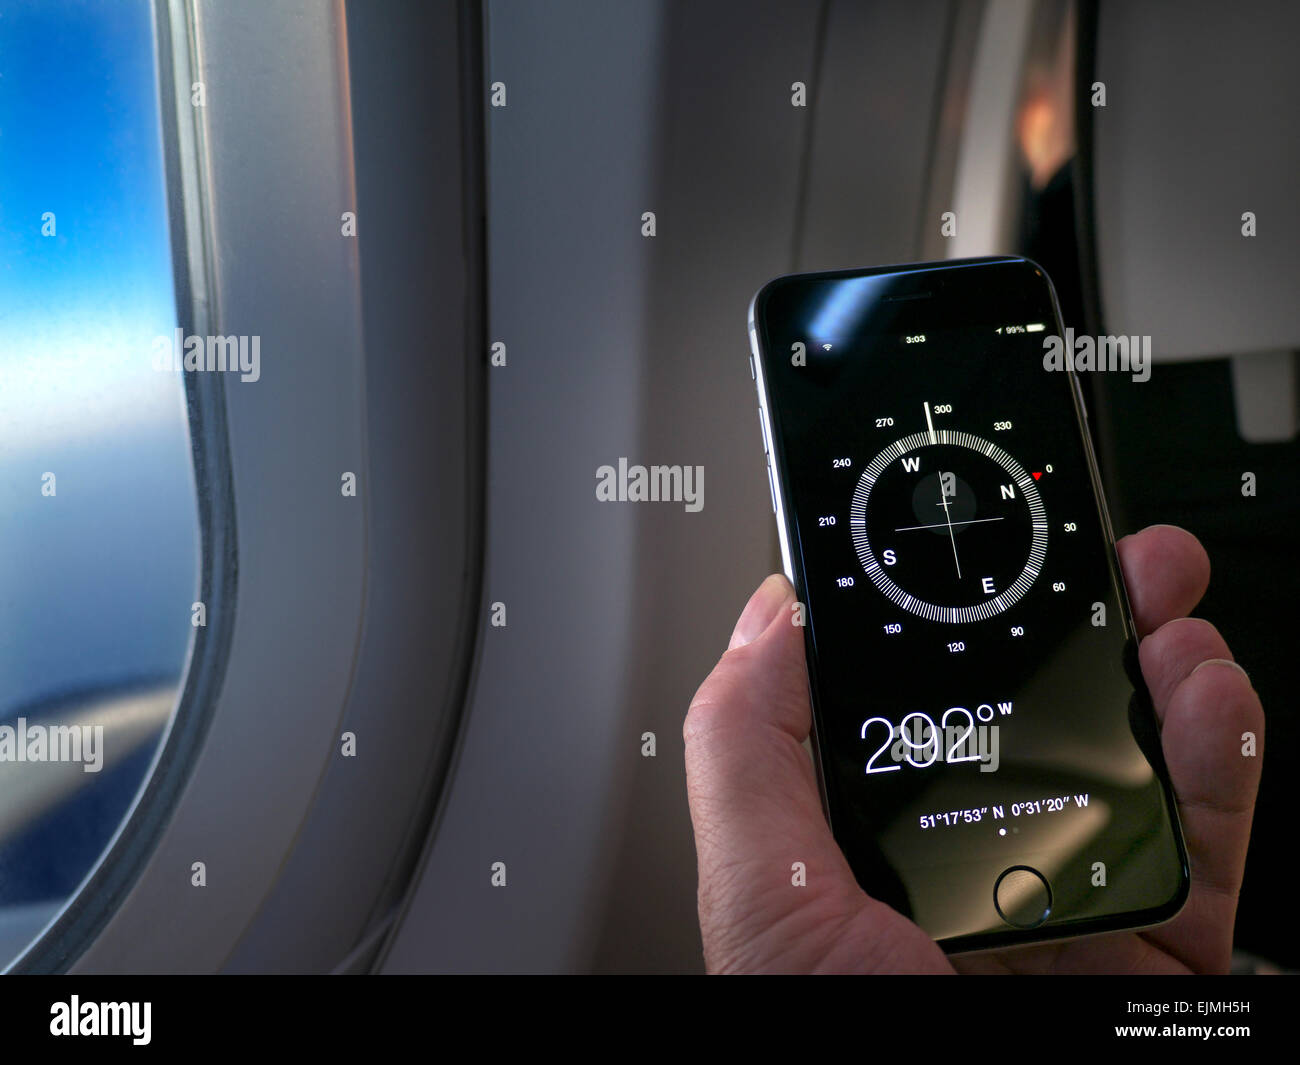 Main du SMARTPHONE COMPASS tenant le smartphone iPhone 6 affichant la  boussole et la direction de l'application de vol à l'écran, l'aile de la  fenêtre de cabine et le ciel derrière Photo